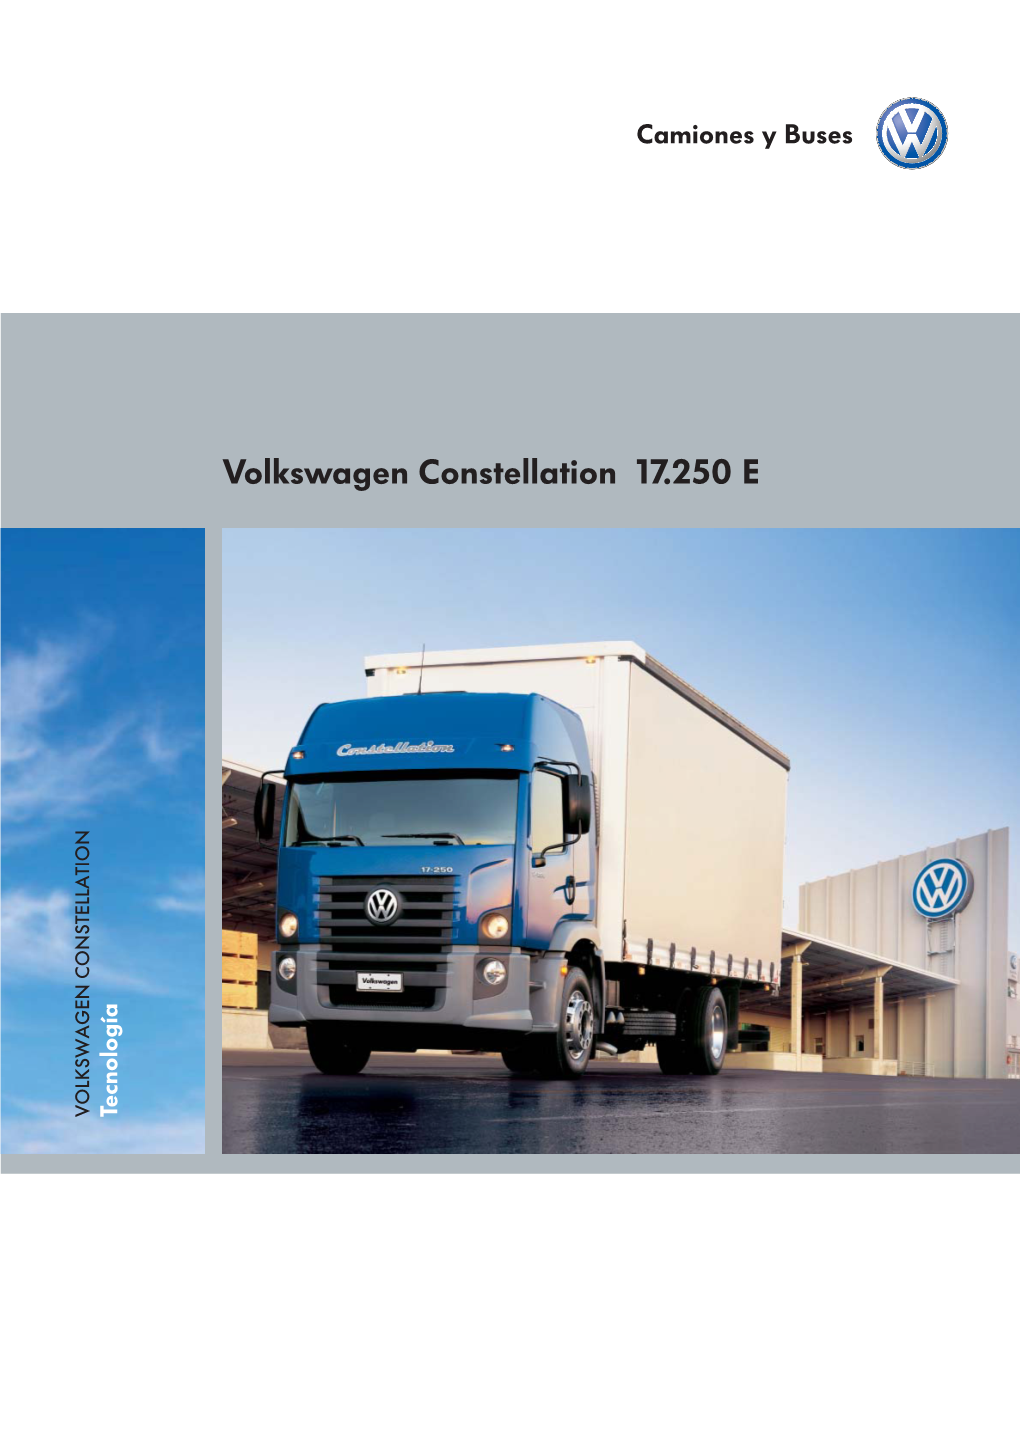 Volkswagen Constellation 17.250 E VOLKSWAGEN CONSTELLATION Tecnología Concesionario